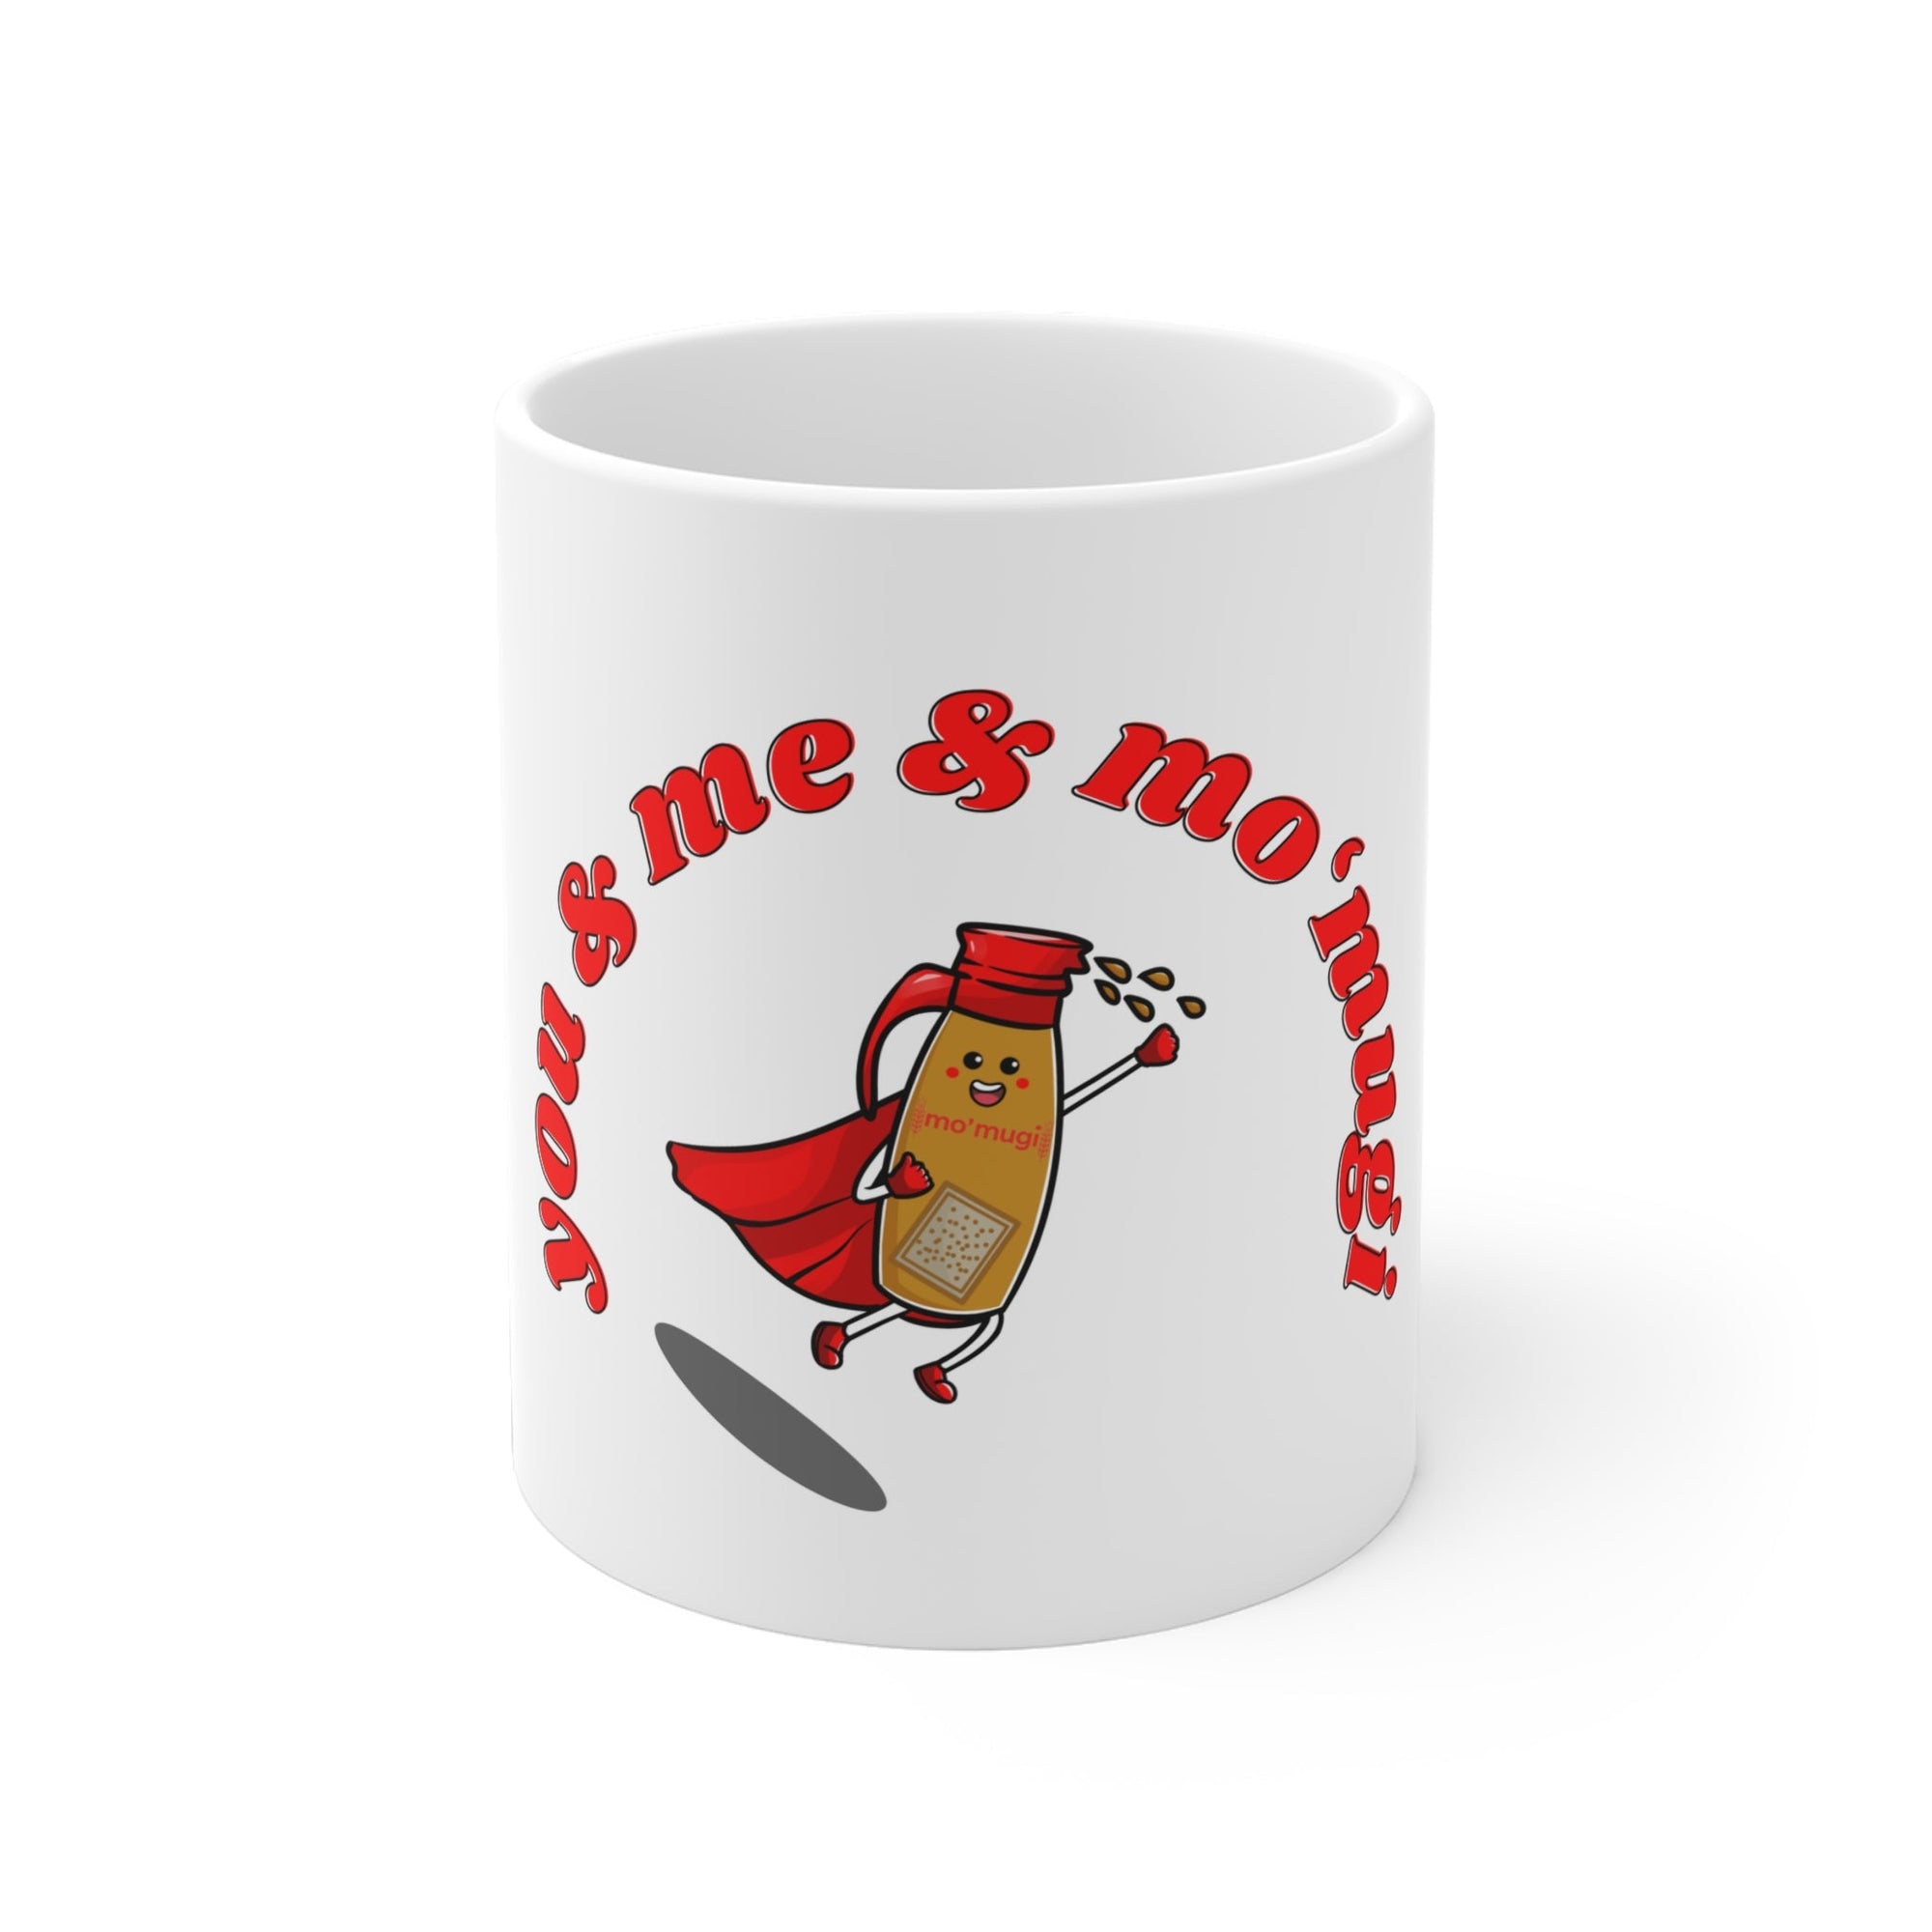 Ultimate mo'mugi Ceramic Mugs 11oz - The Canadian Barley Tea Company®